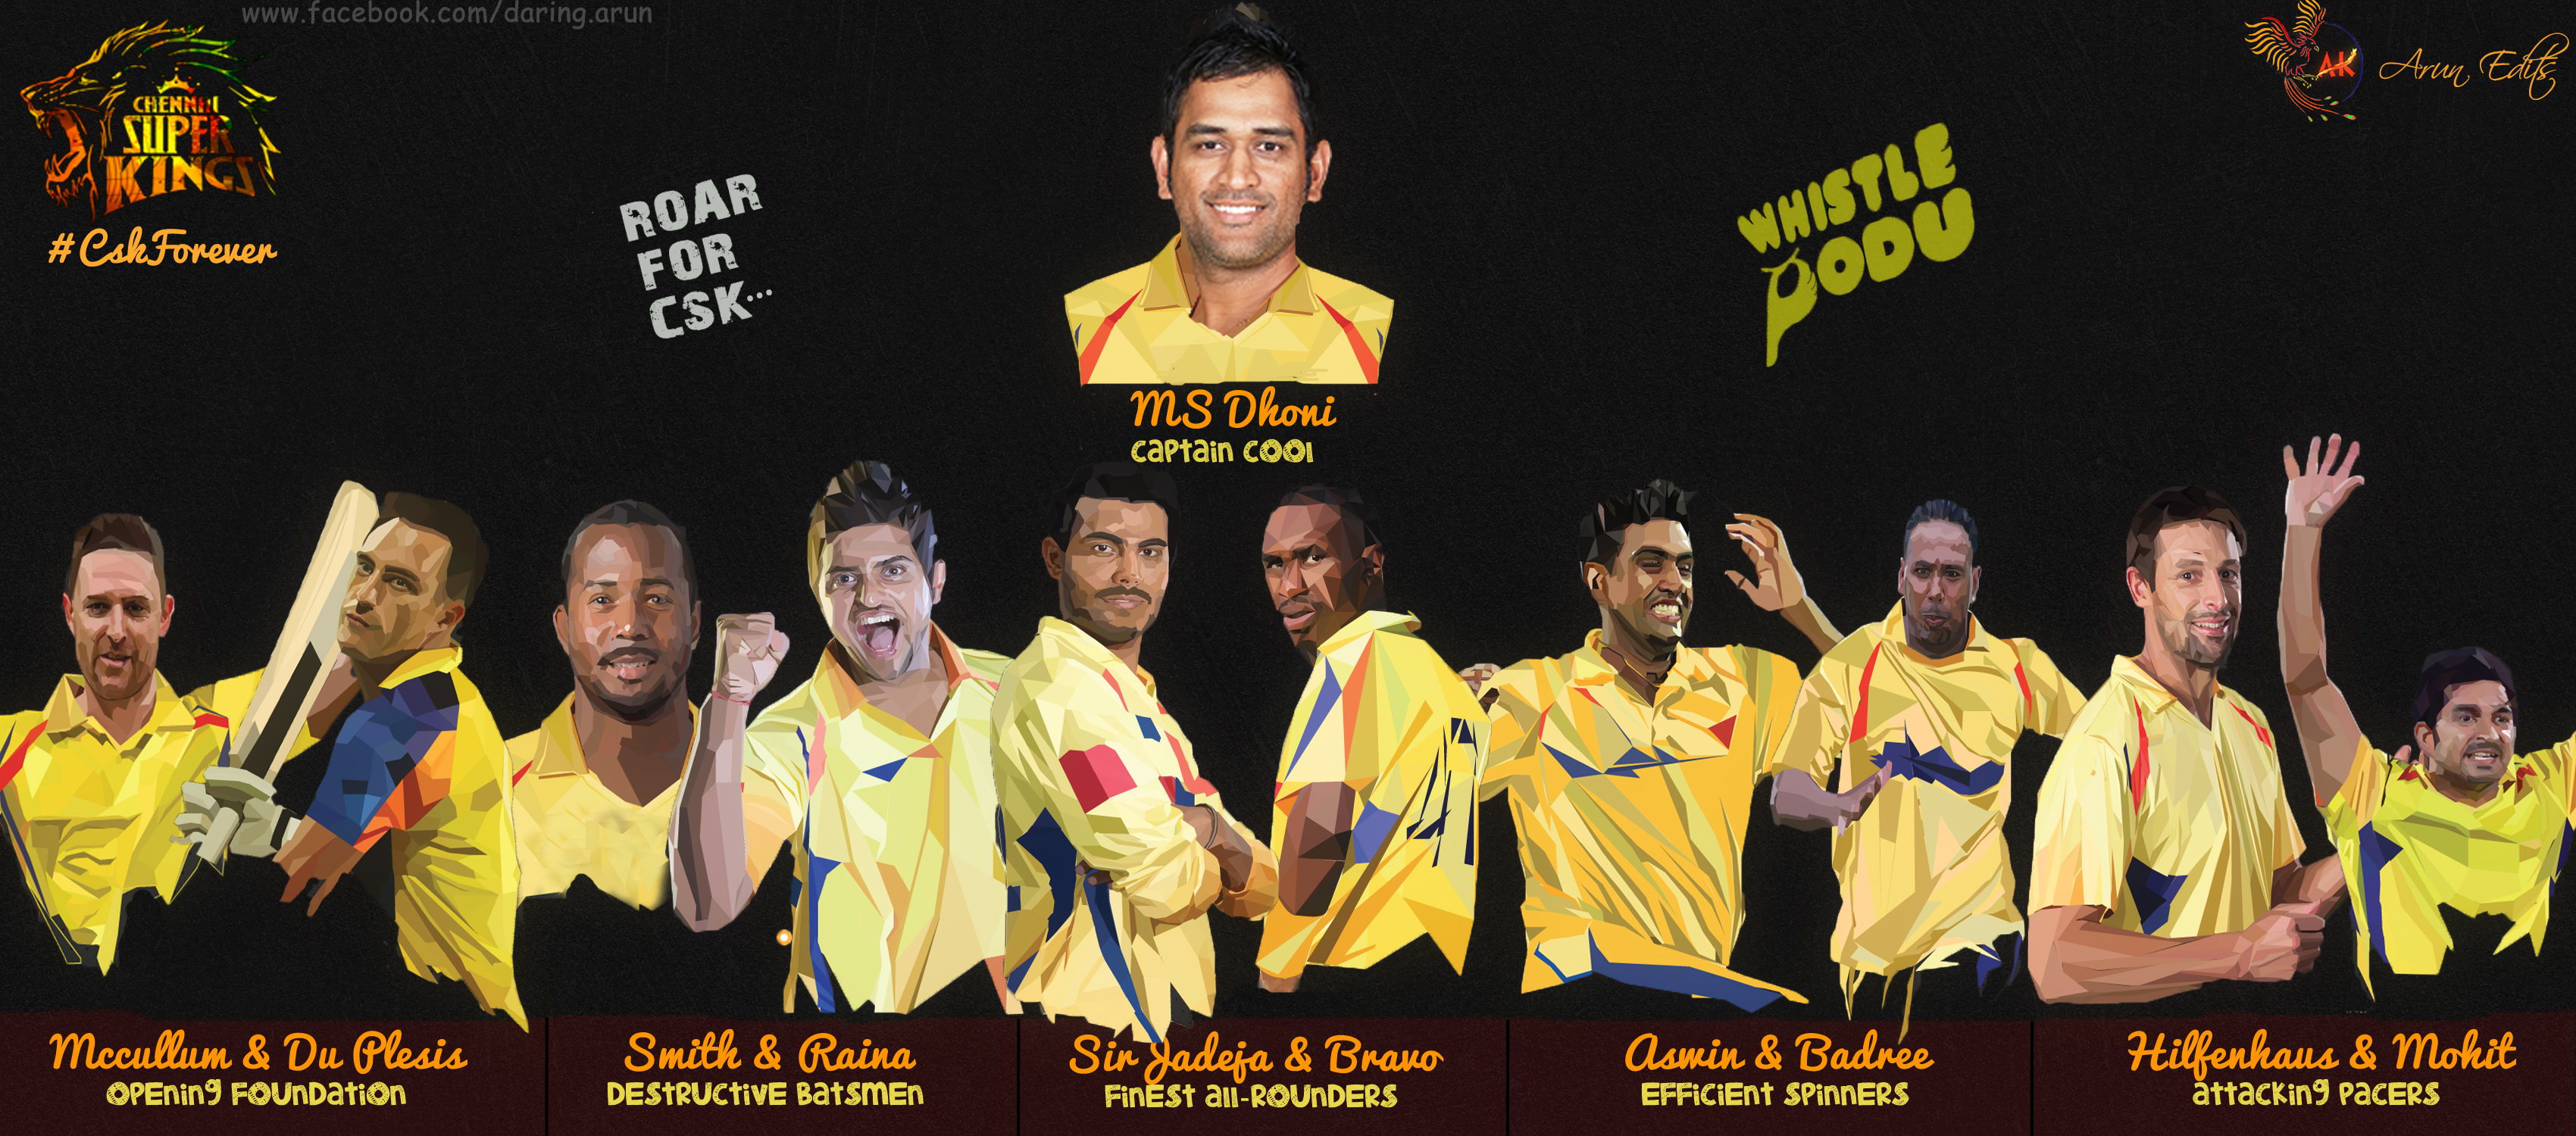 Csk Chennai Super Kings Image Team